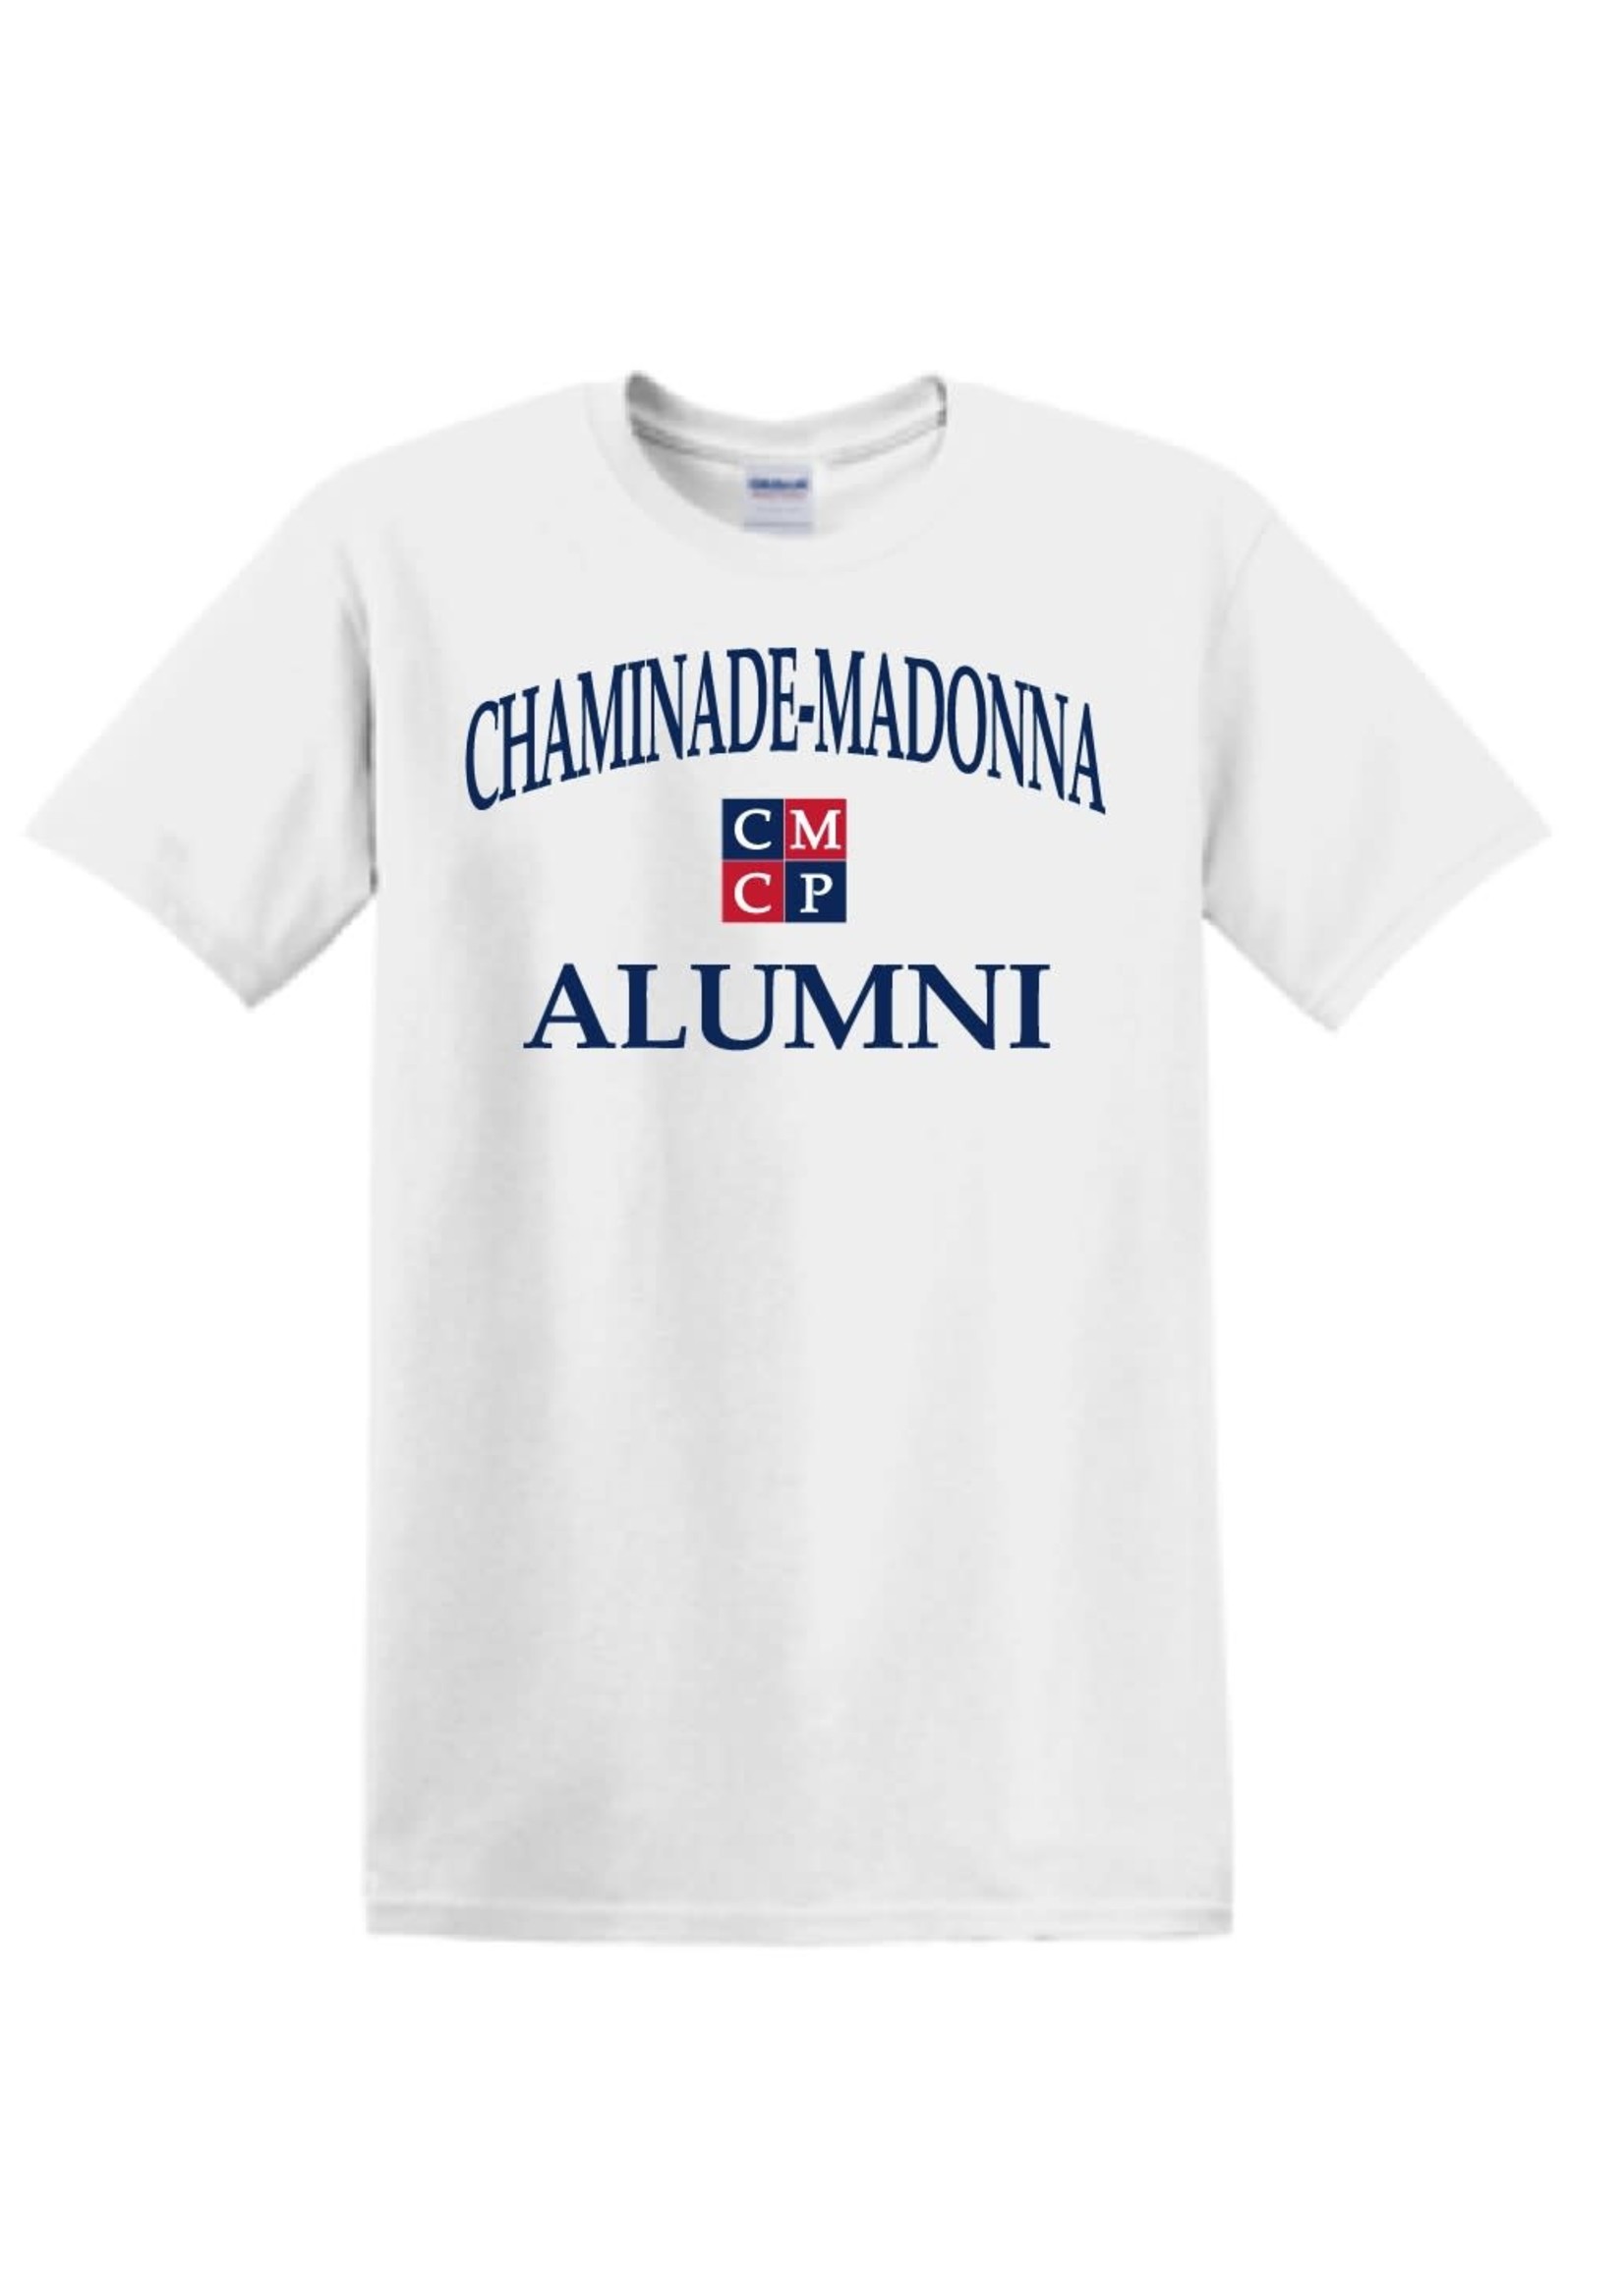 Alumni-White-Shirt